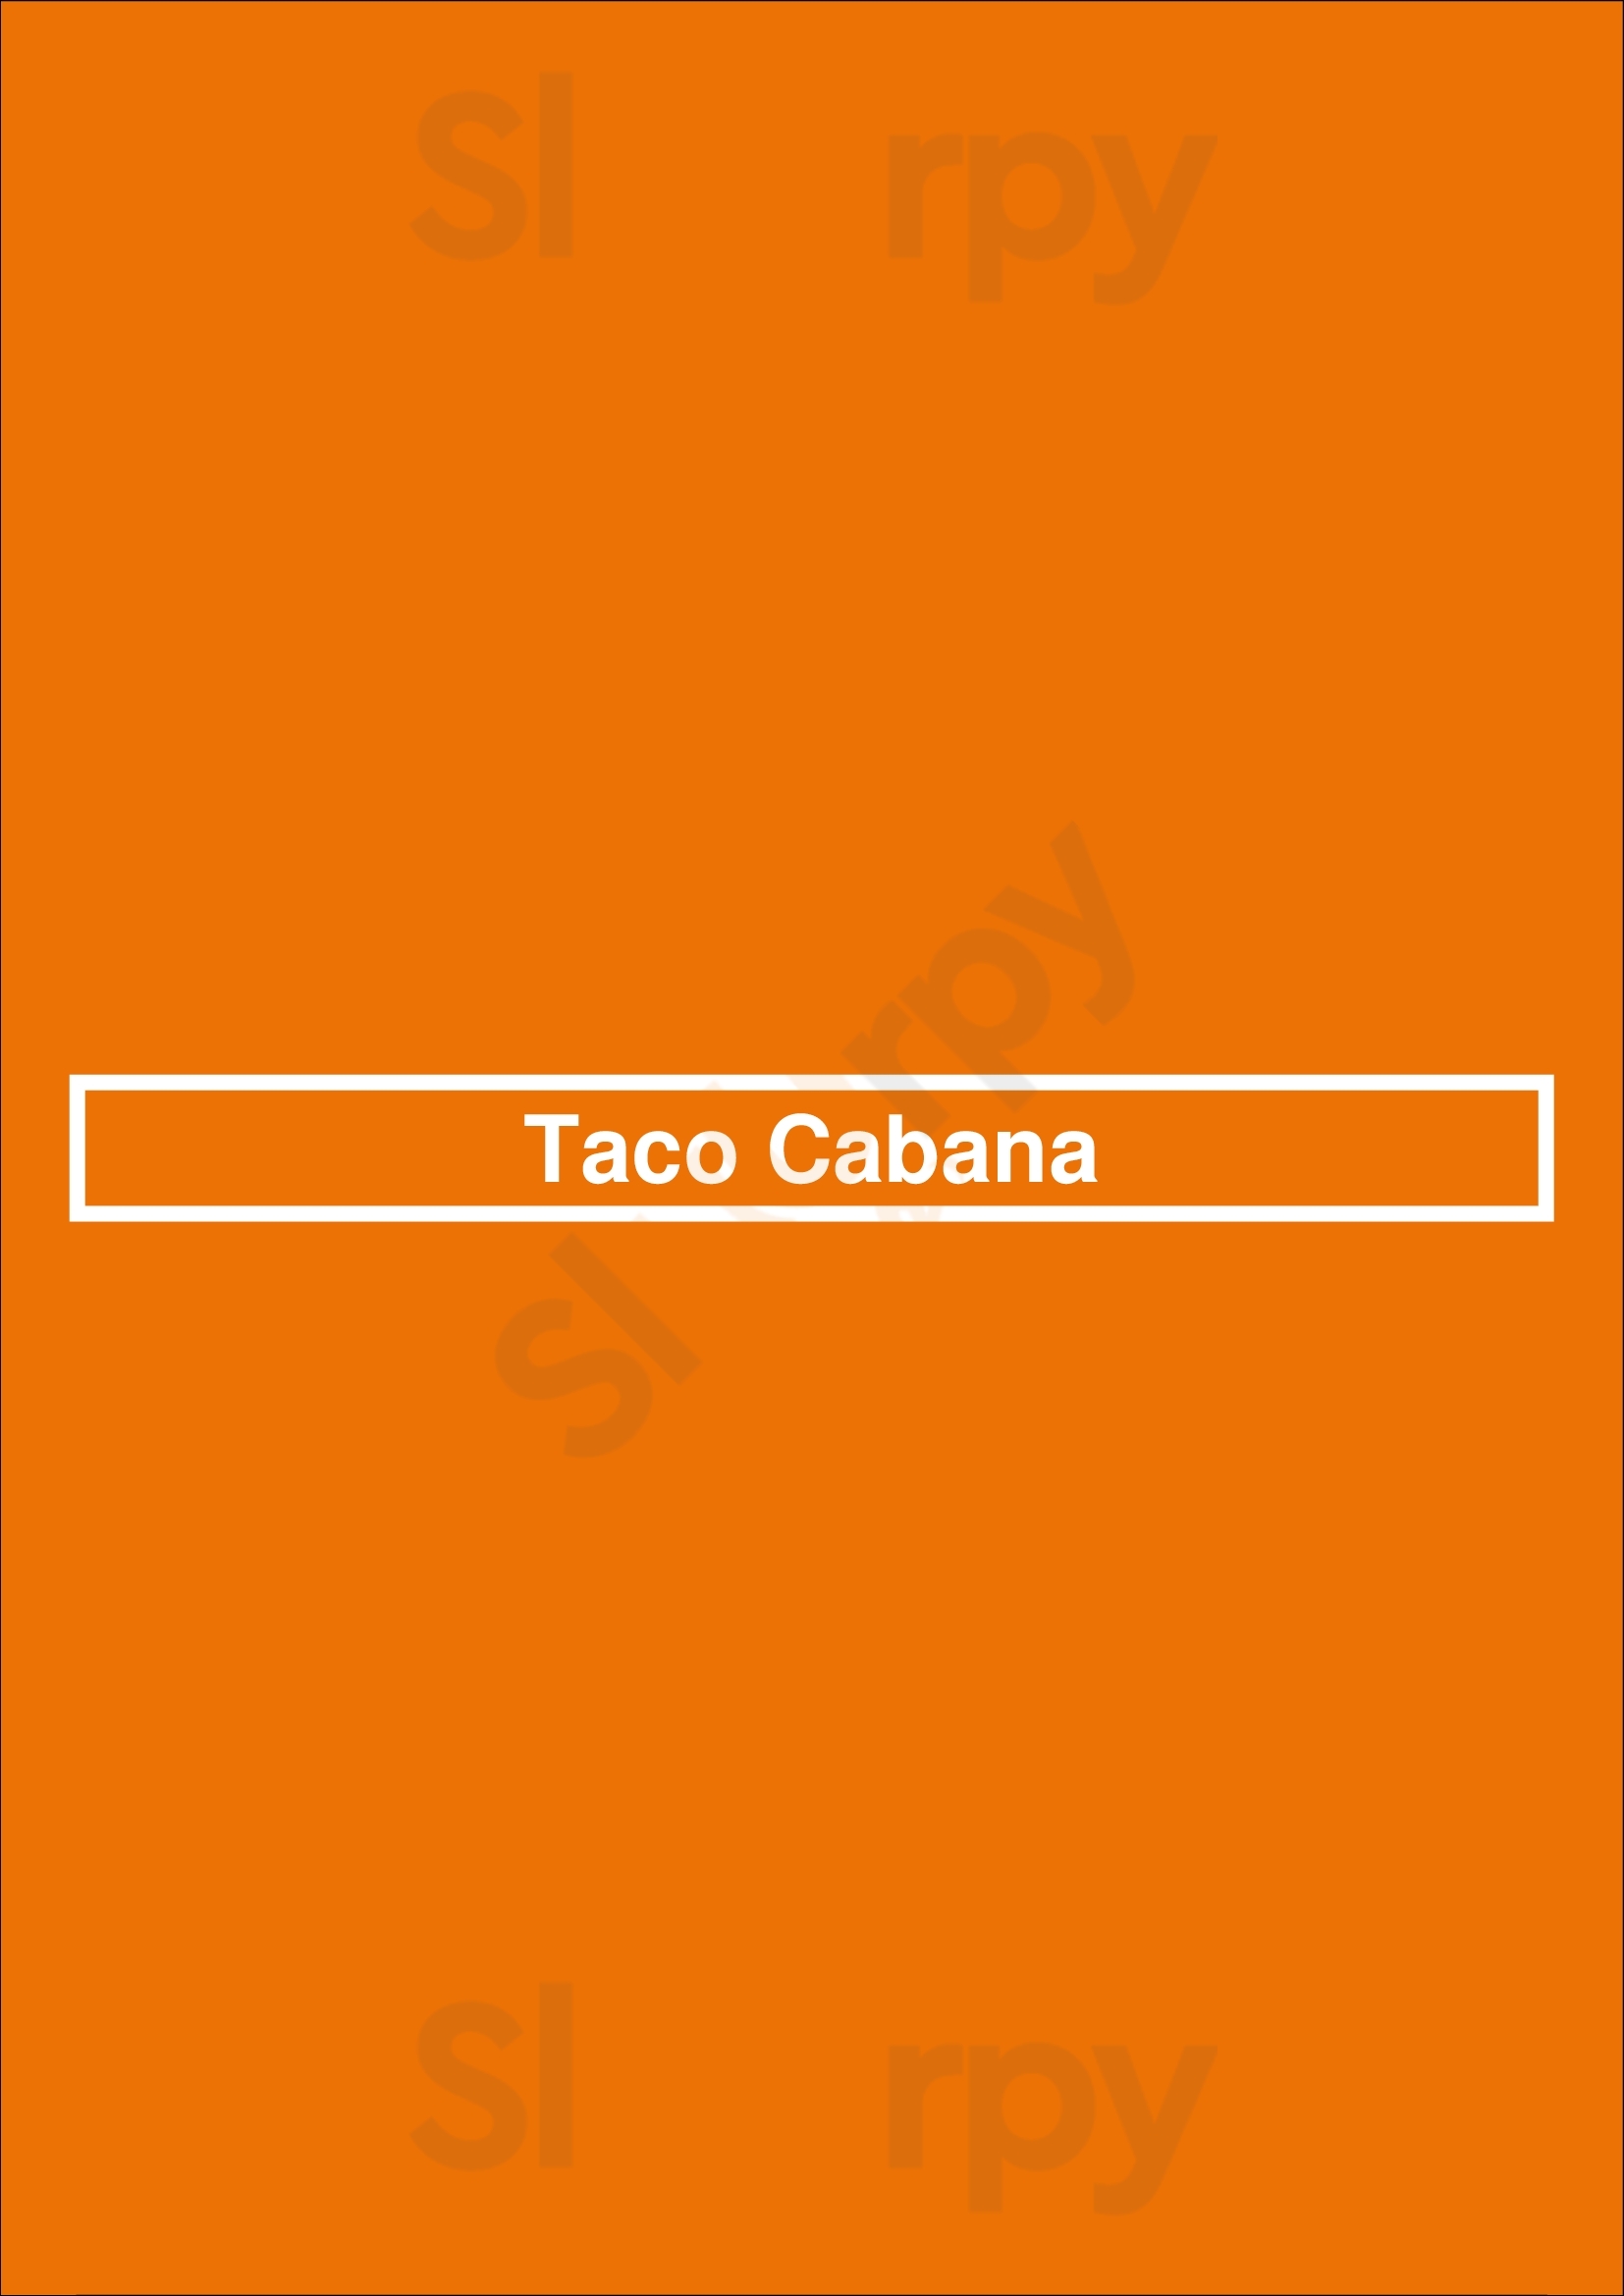 Taco Cabana Houston Menu - 1